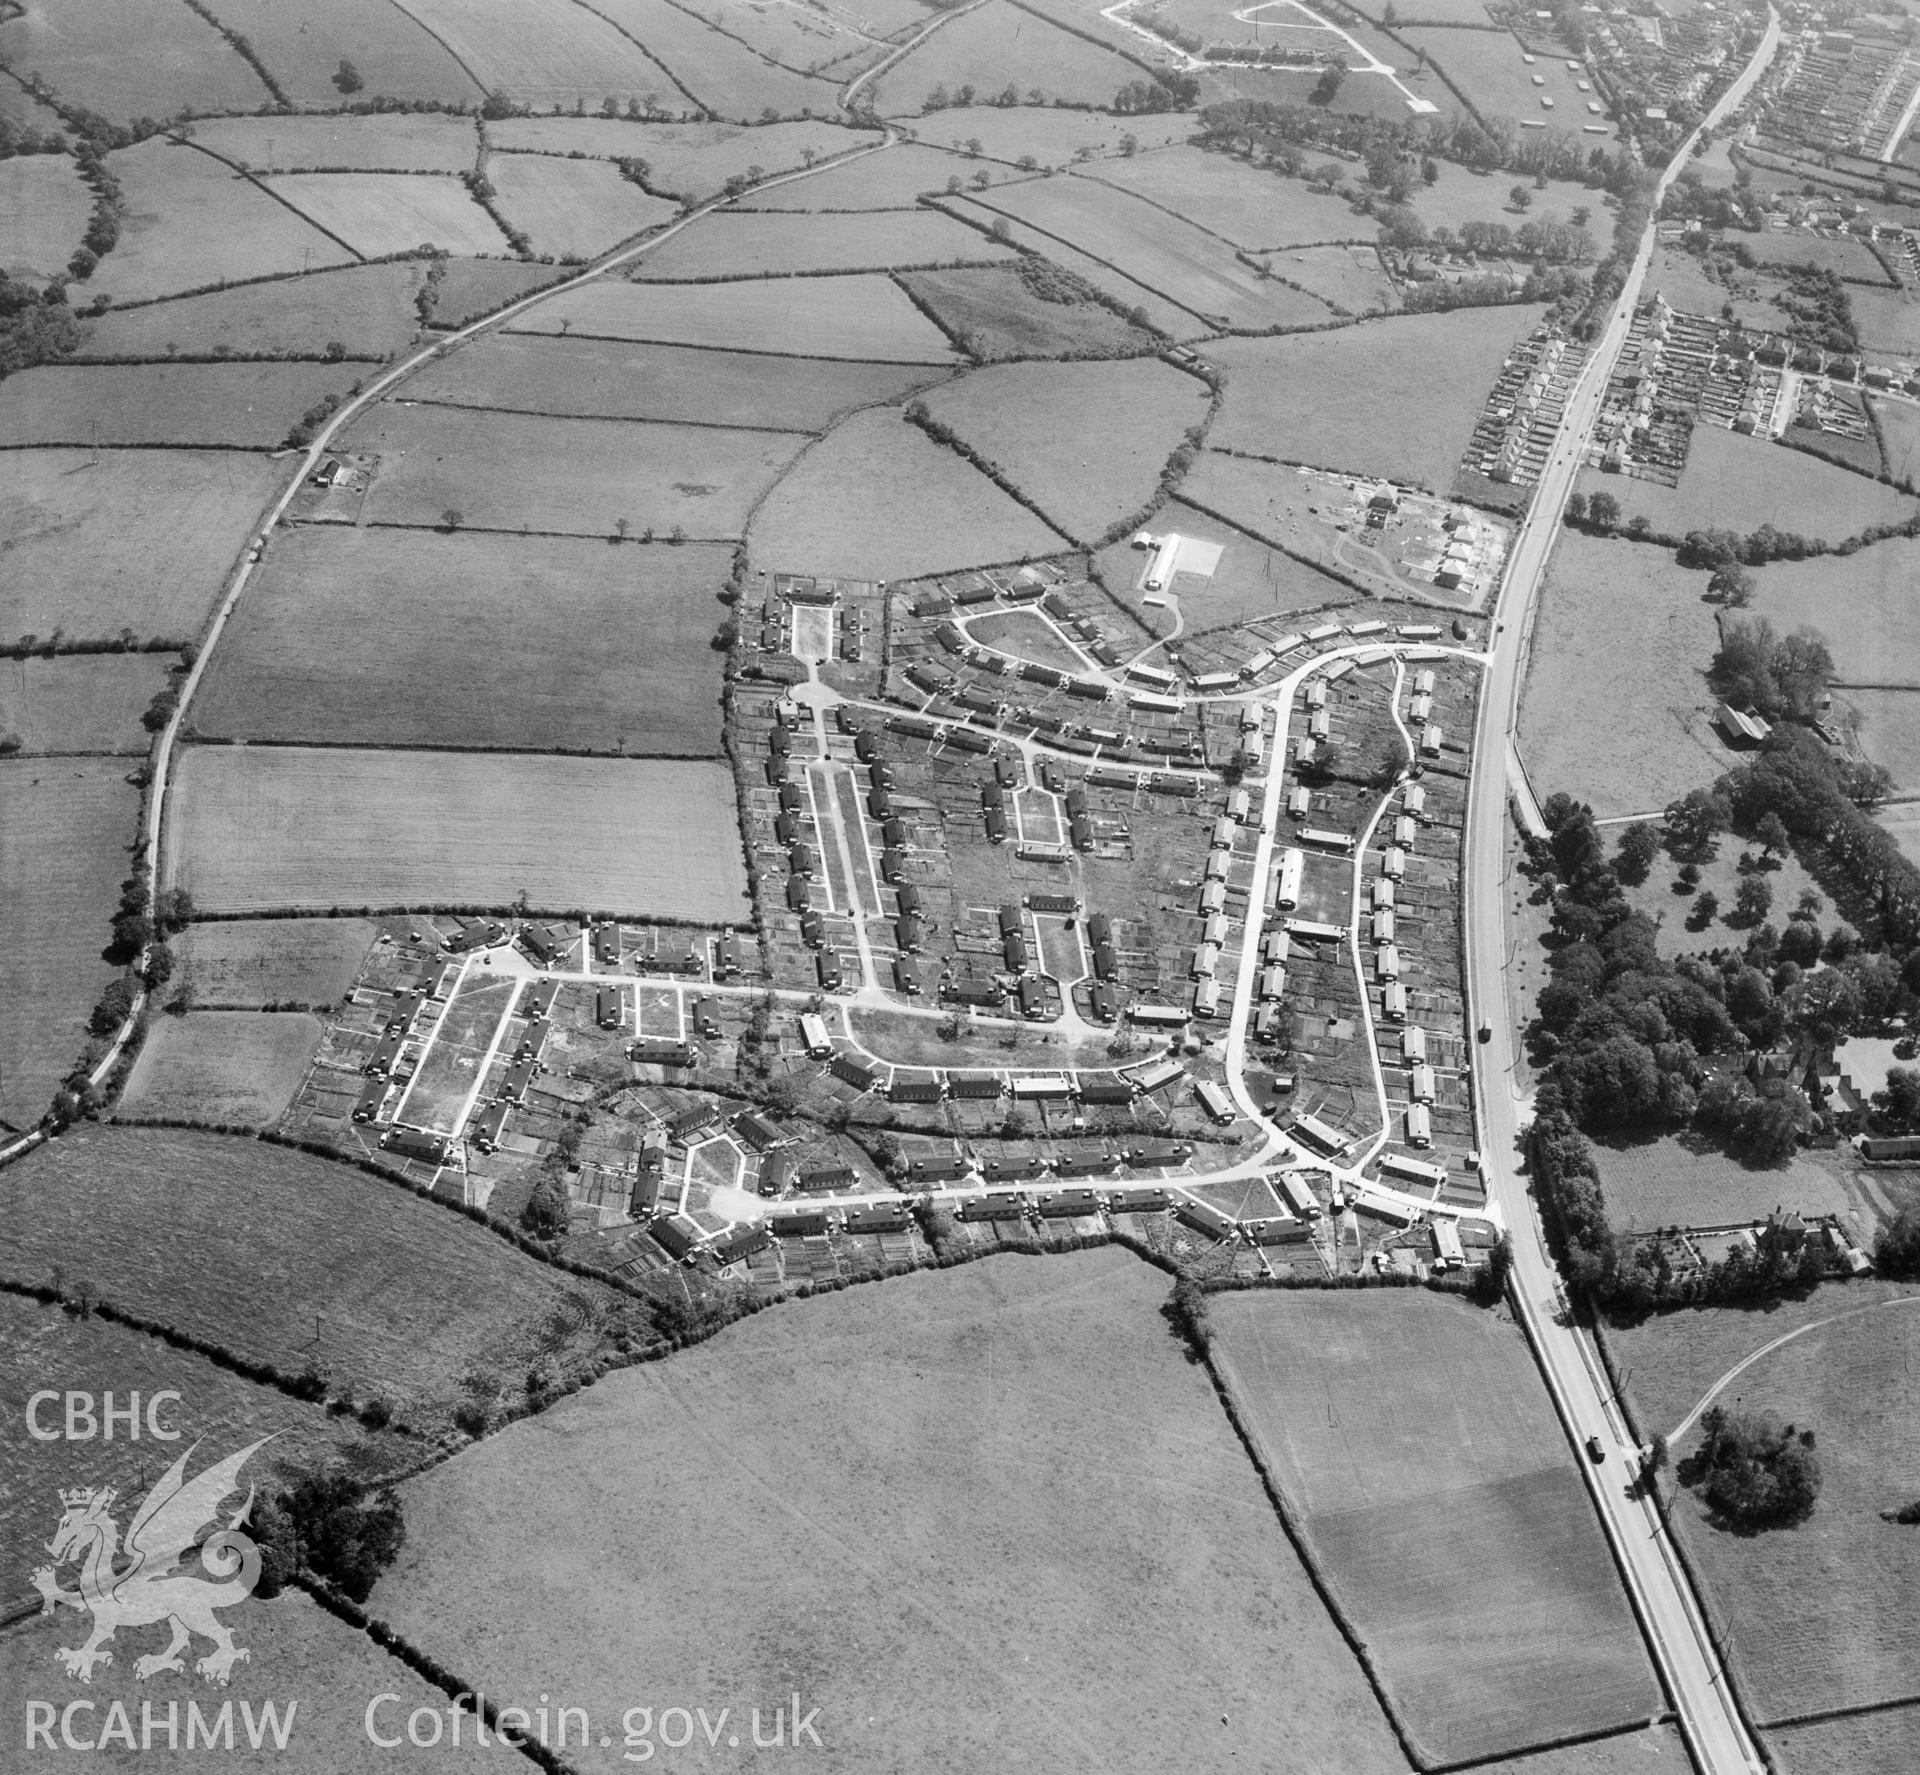 View of prefab housing estate, later rebuilt as Bryntirion, Bridgend